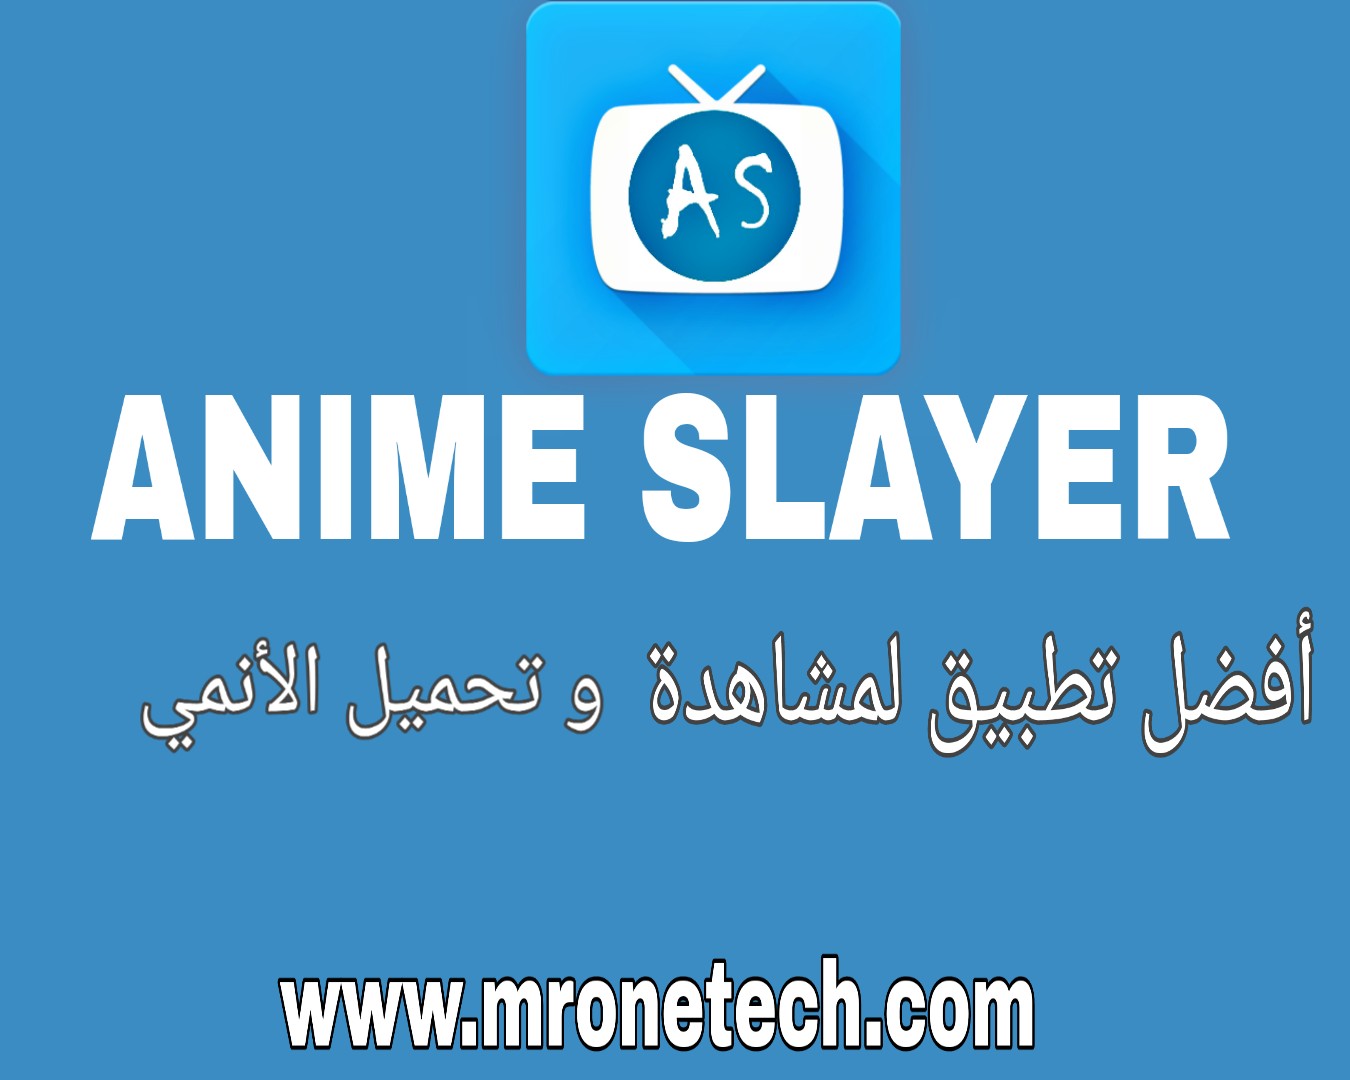 تحميل تطبيق أنمي سلاير لمشاهدة و تحميل الأنمي Download Anime Slayer